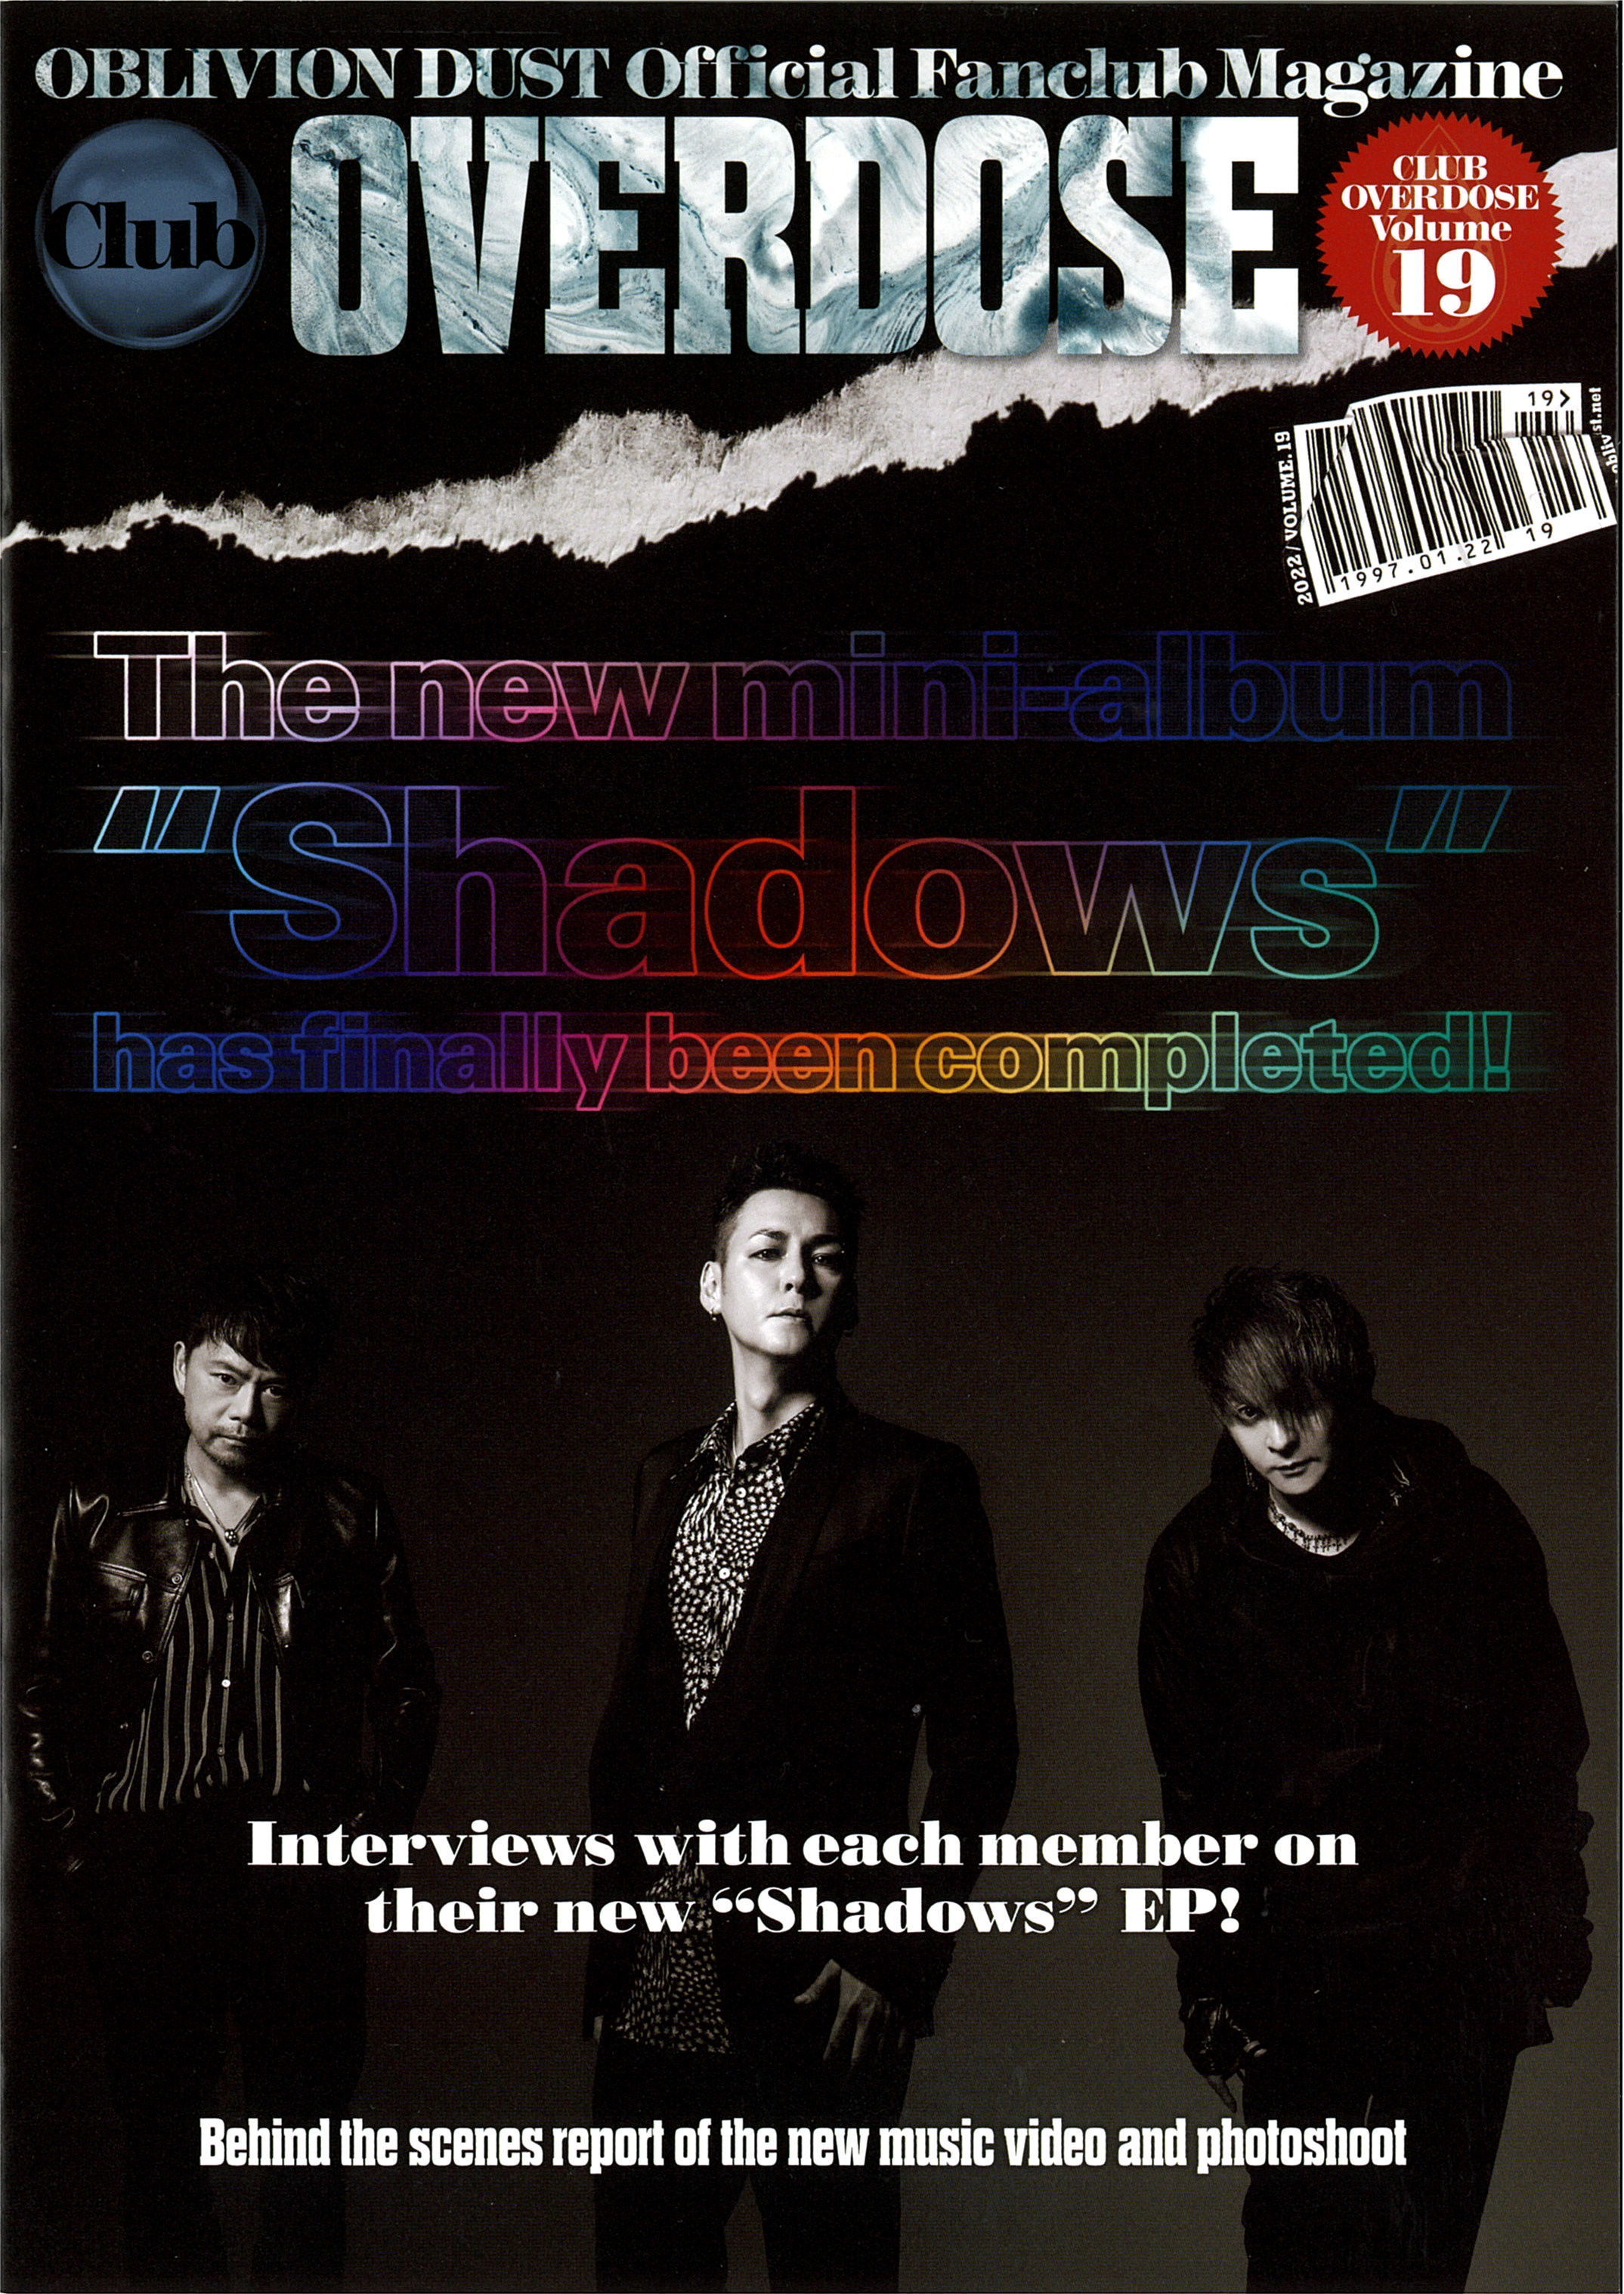 OBLIVION DUST Official Fanclub Magazine Club OVERDOSE Vol.19